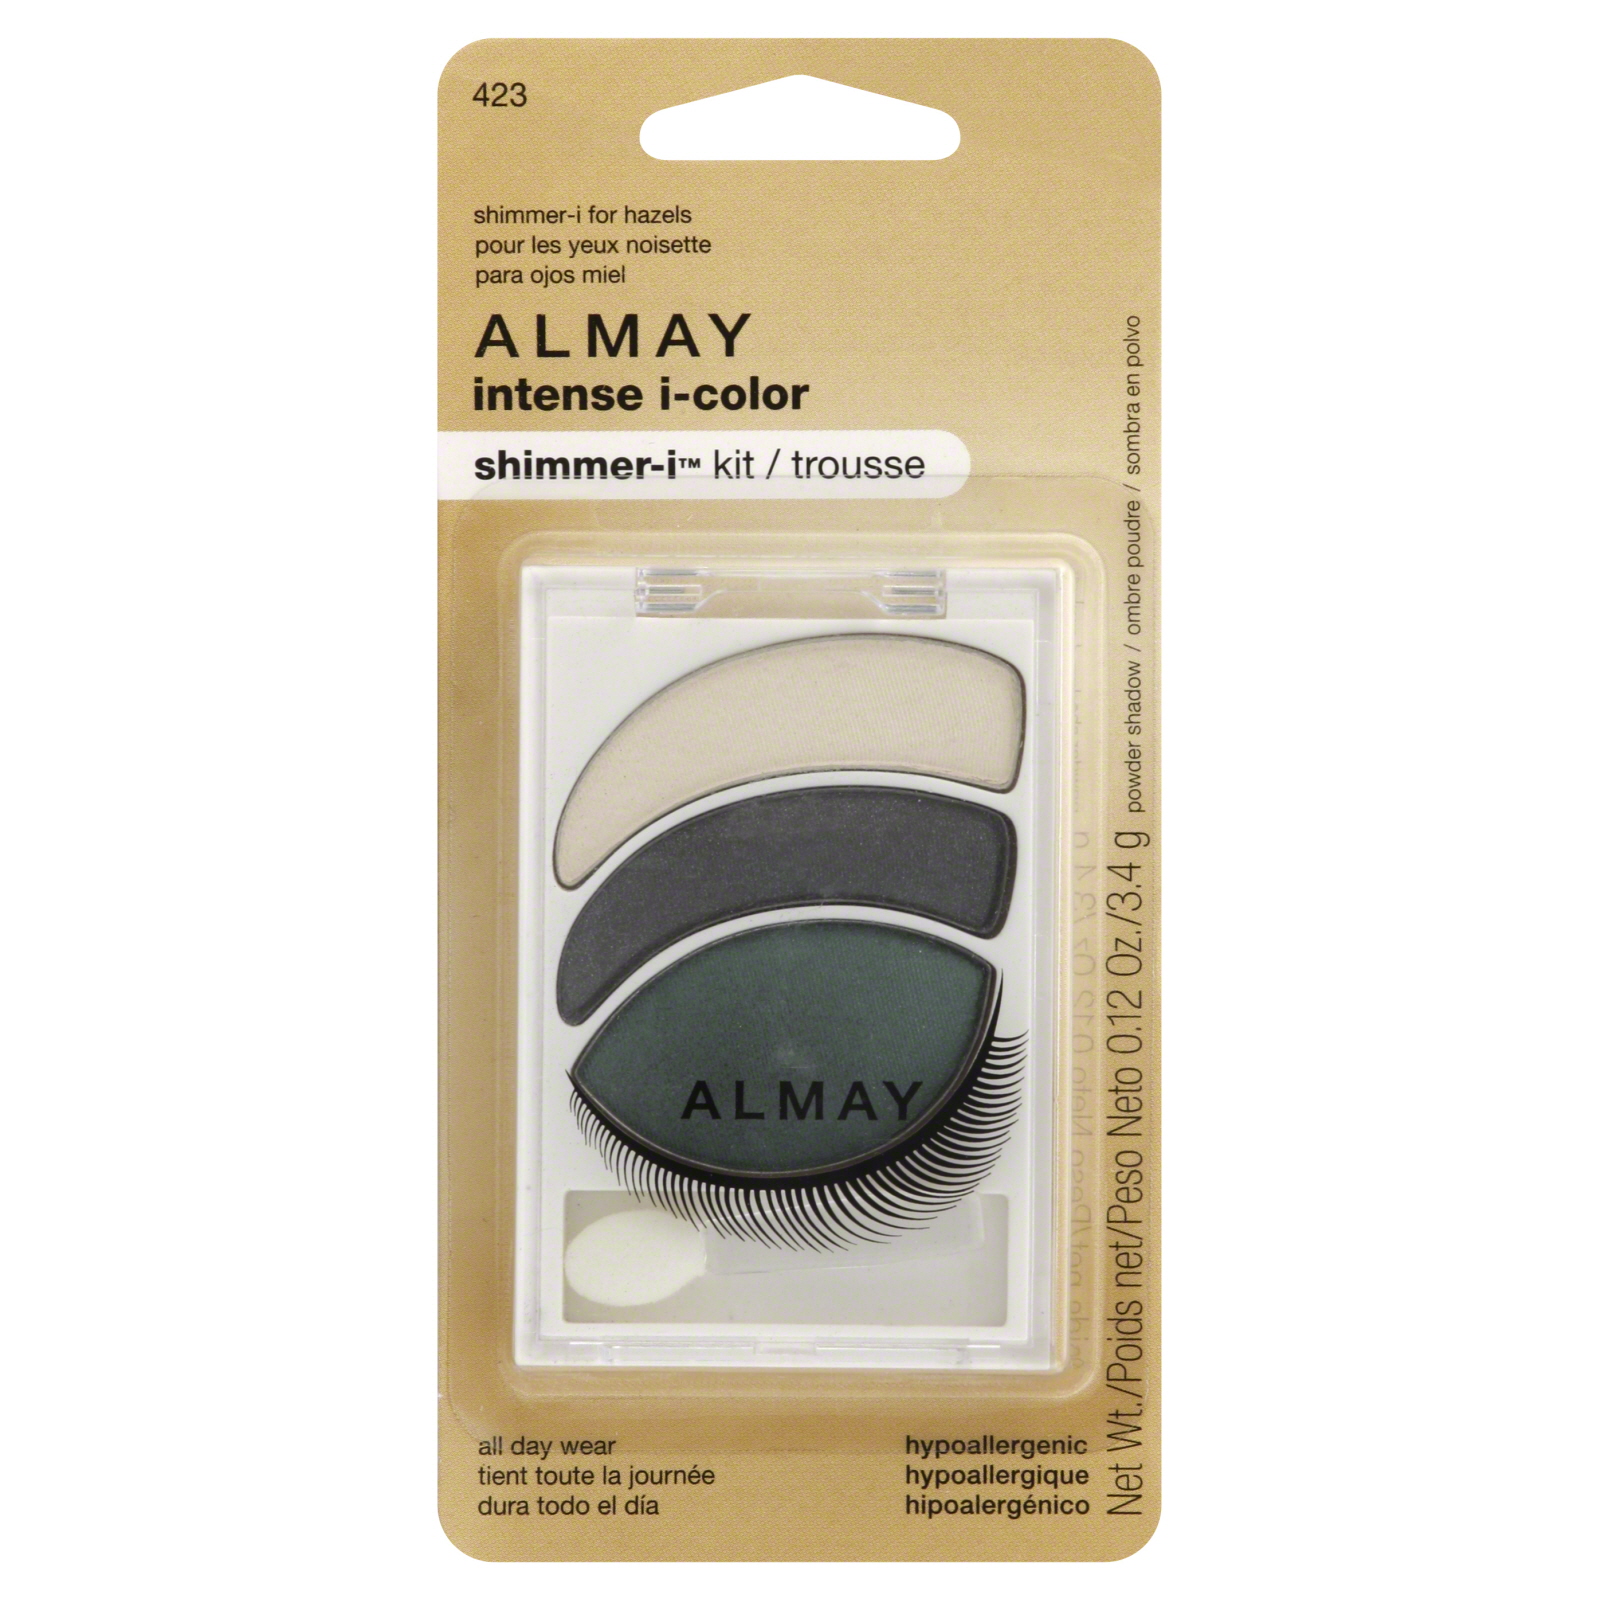 Almay Intense I-Color Shimmer-I Kit, Shimmer, for Hazels, 0.12 oz (3.4 g)